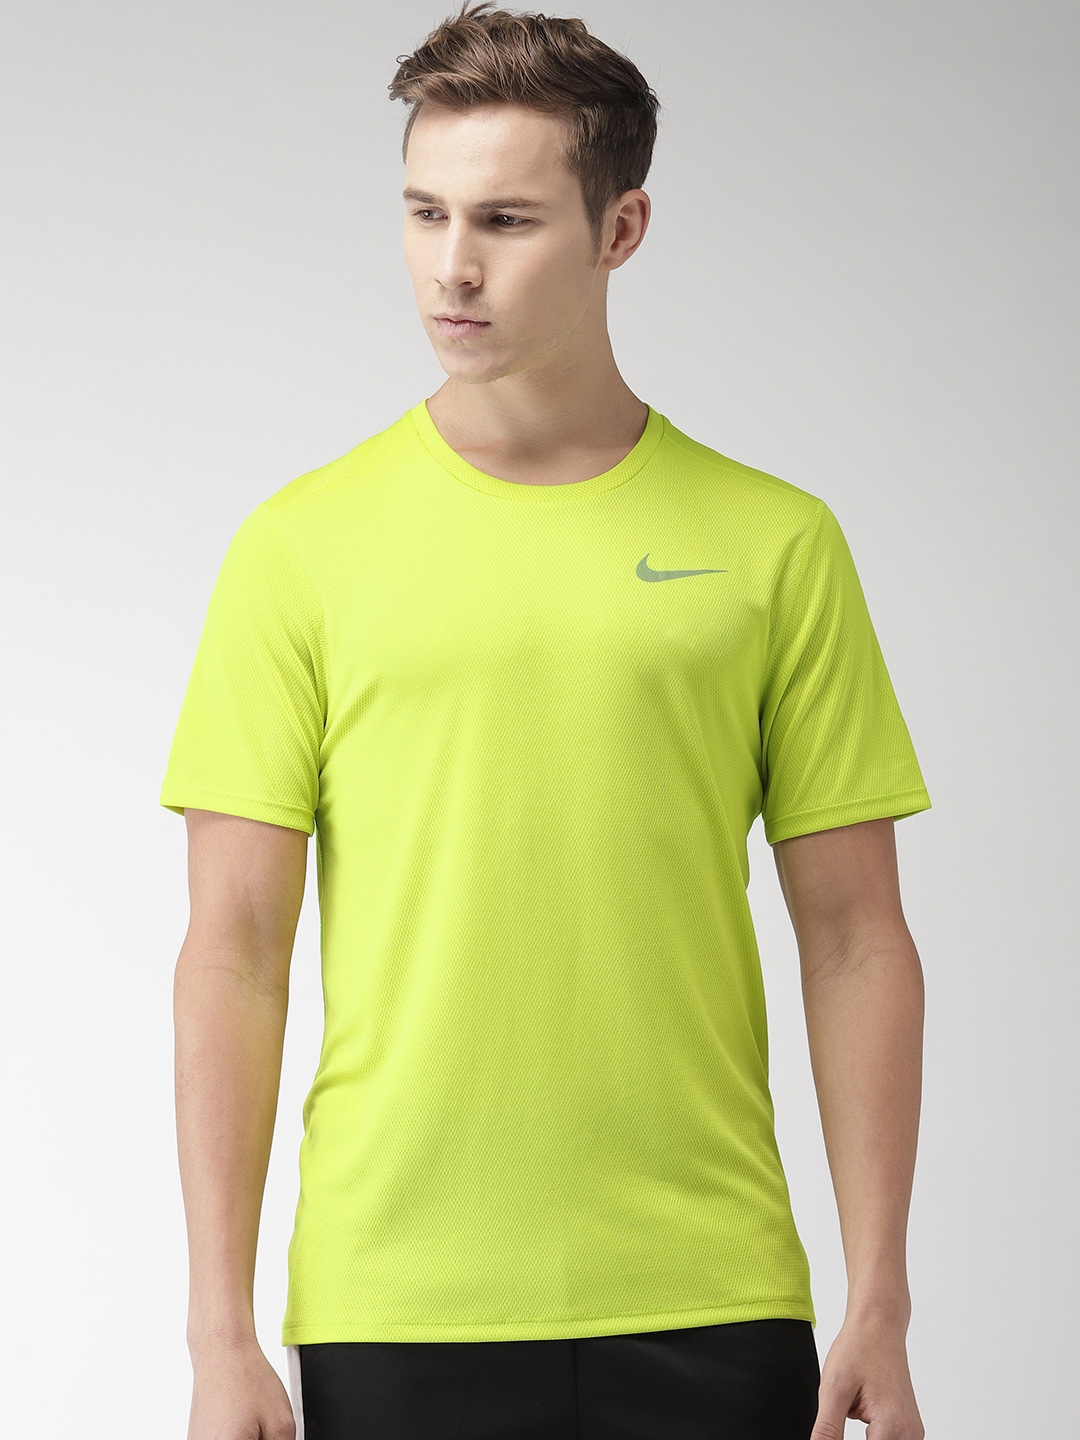 fluorescent green t shirt